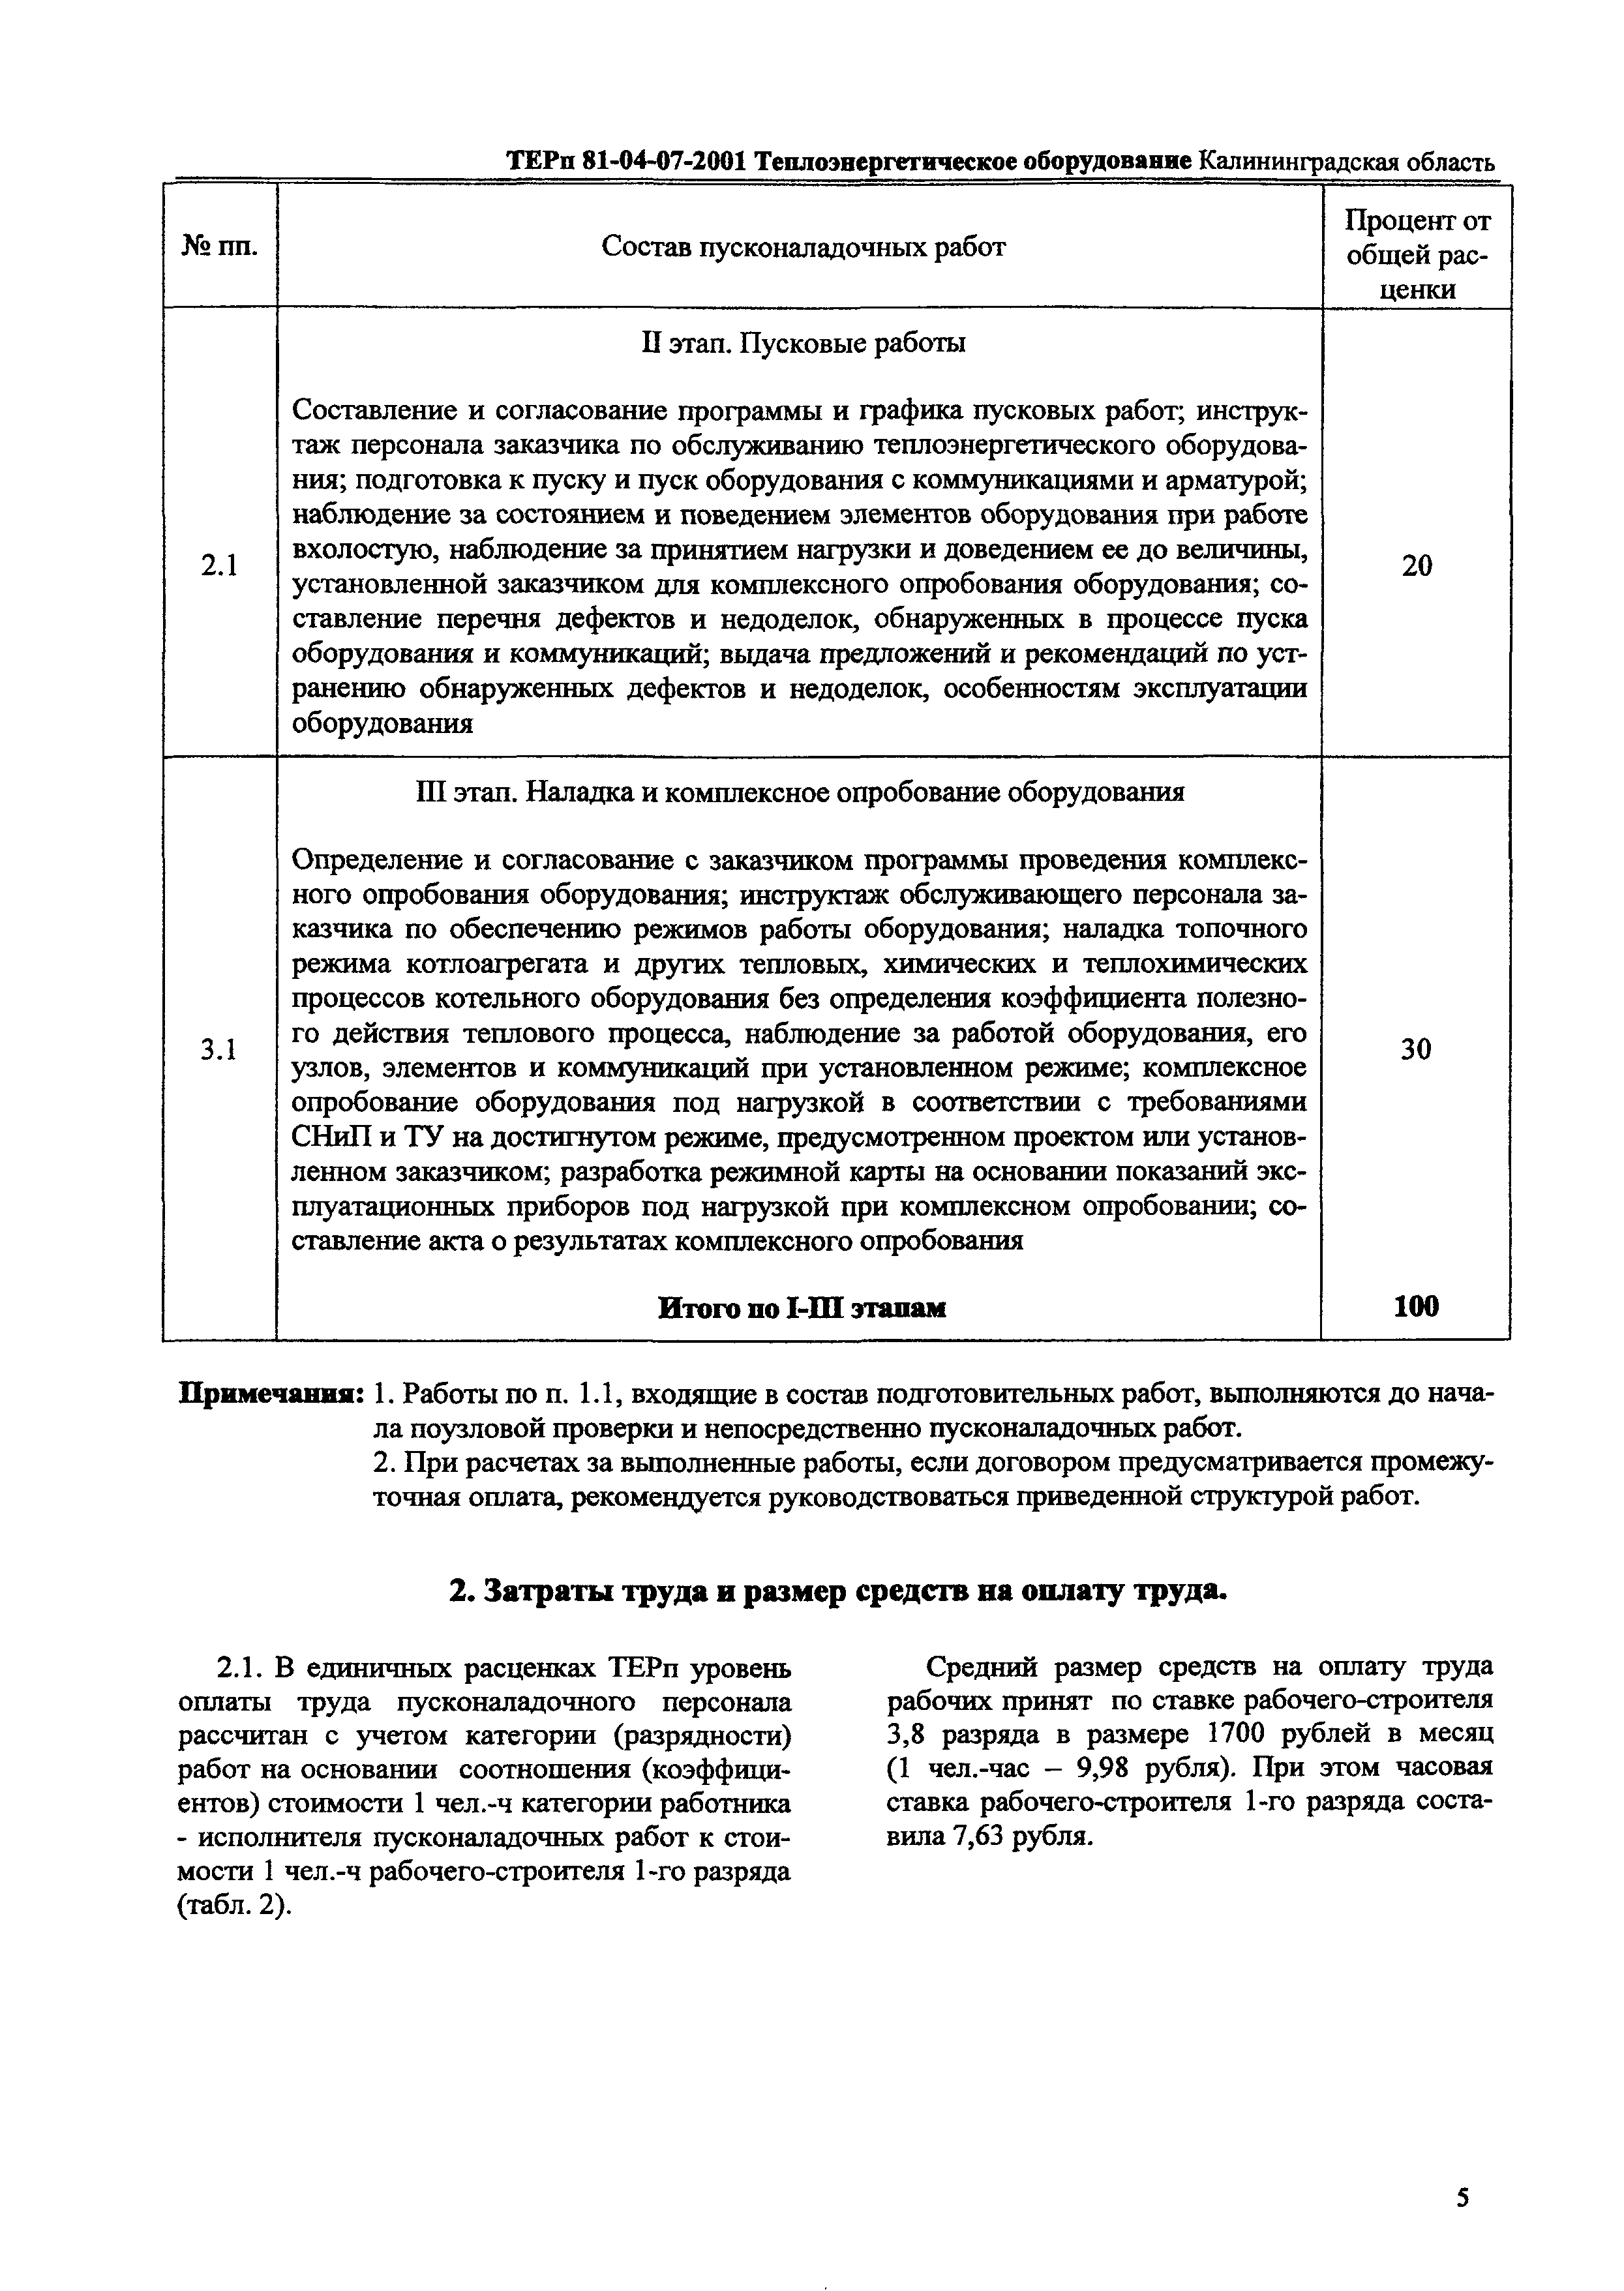 ТЕРп Калининградская область 2001-07